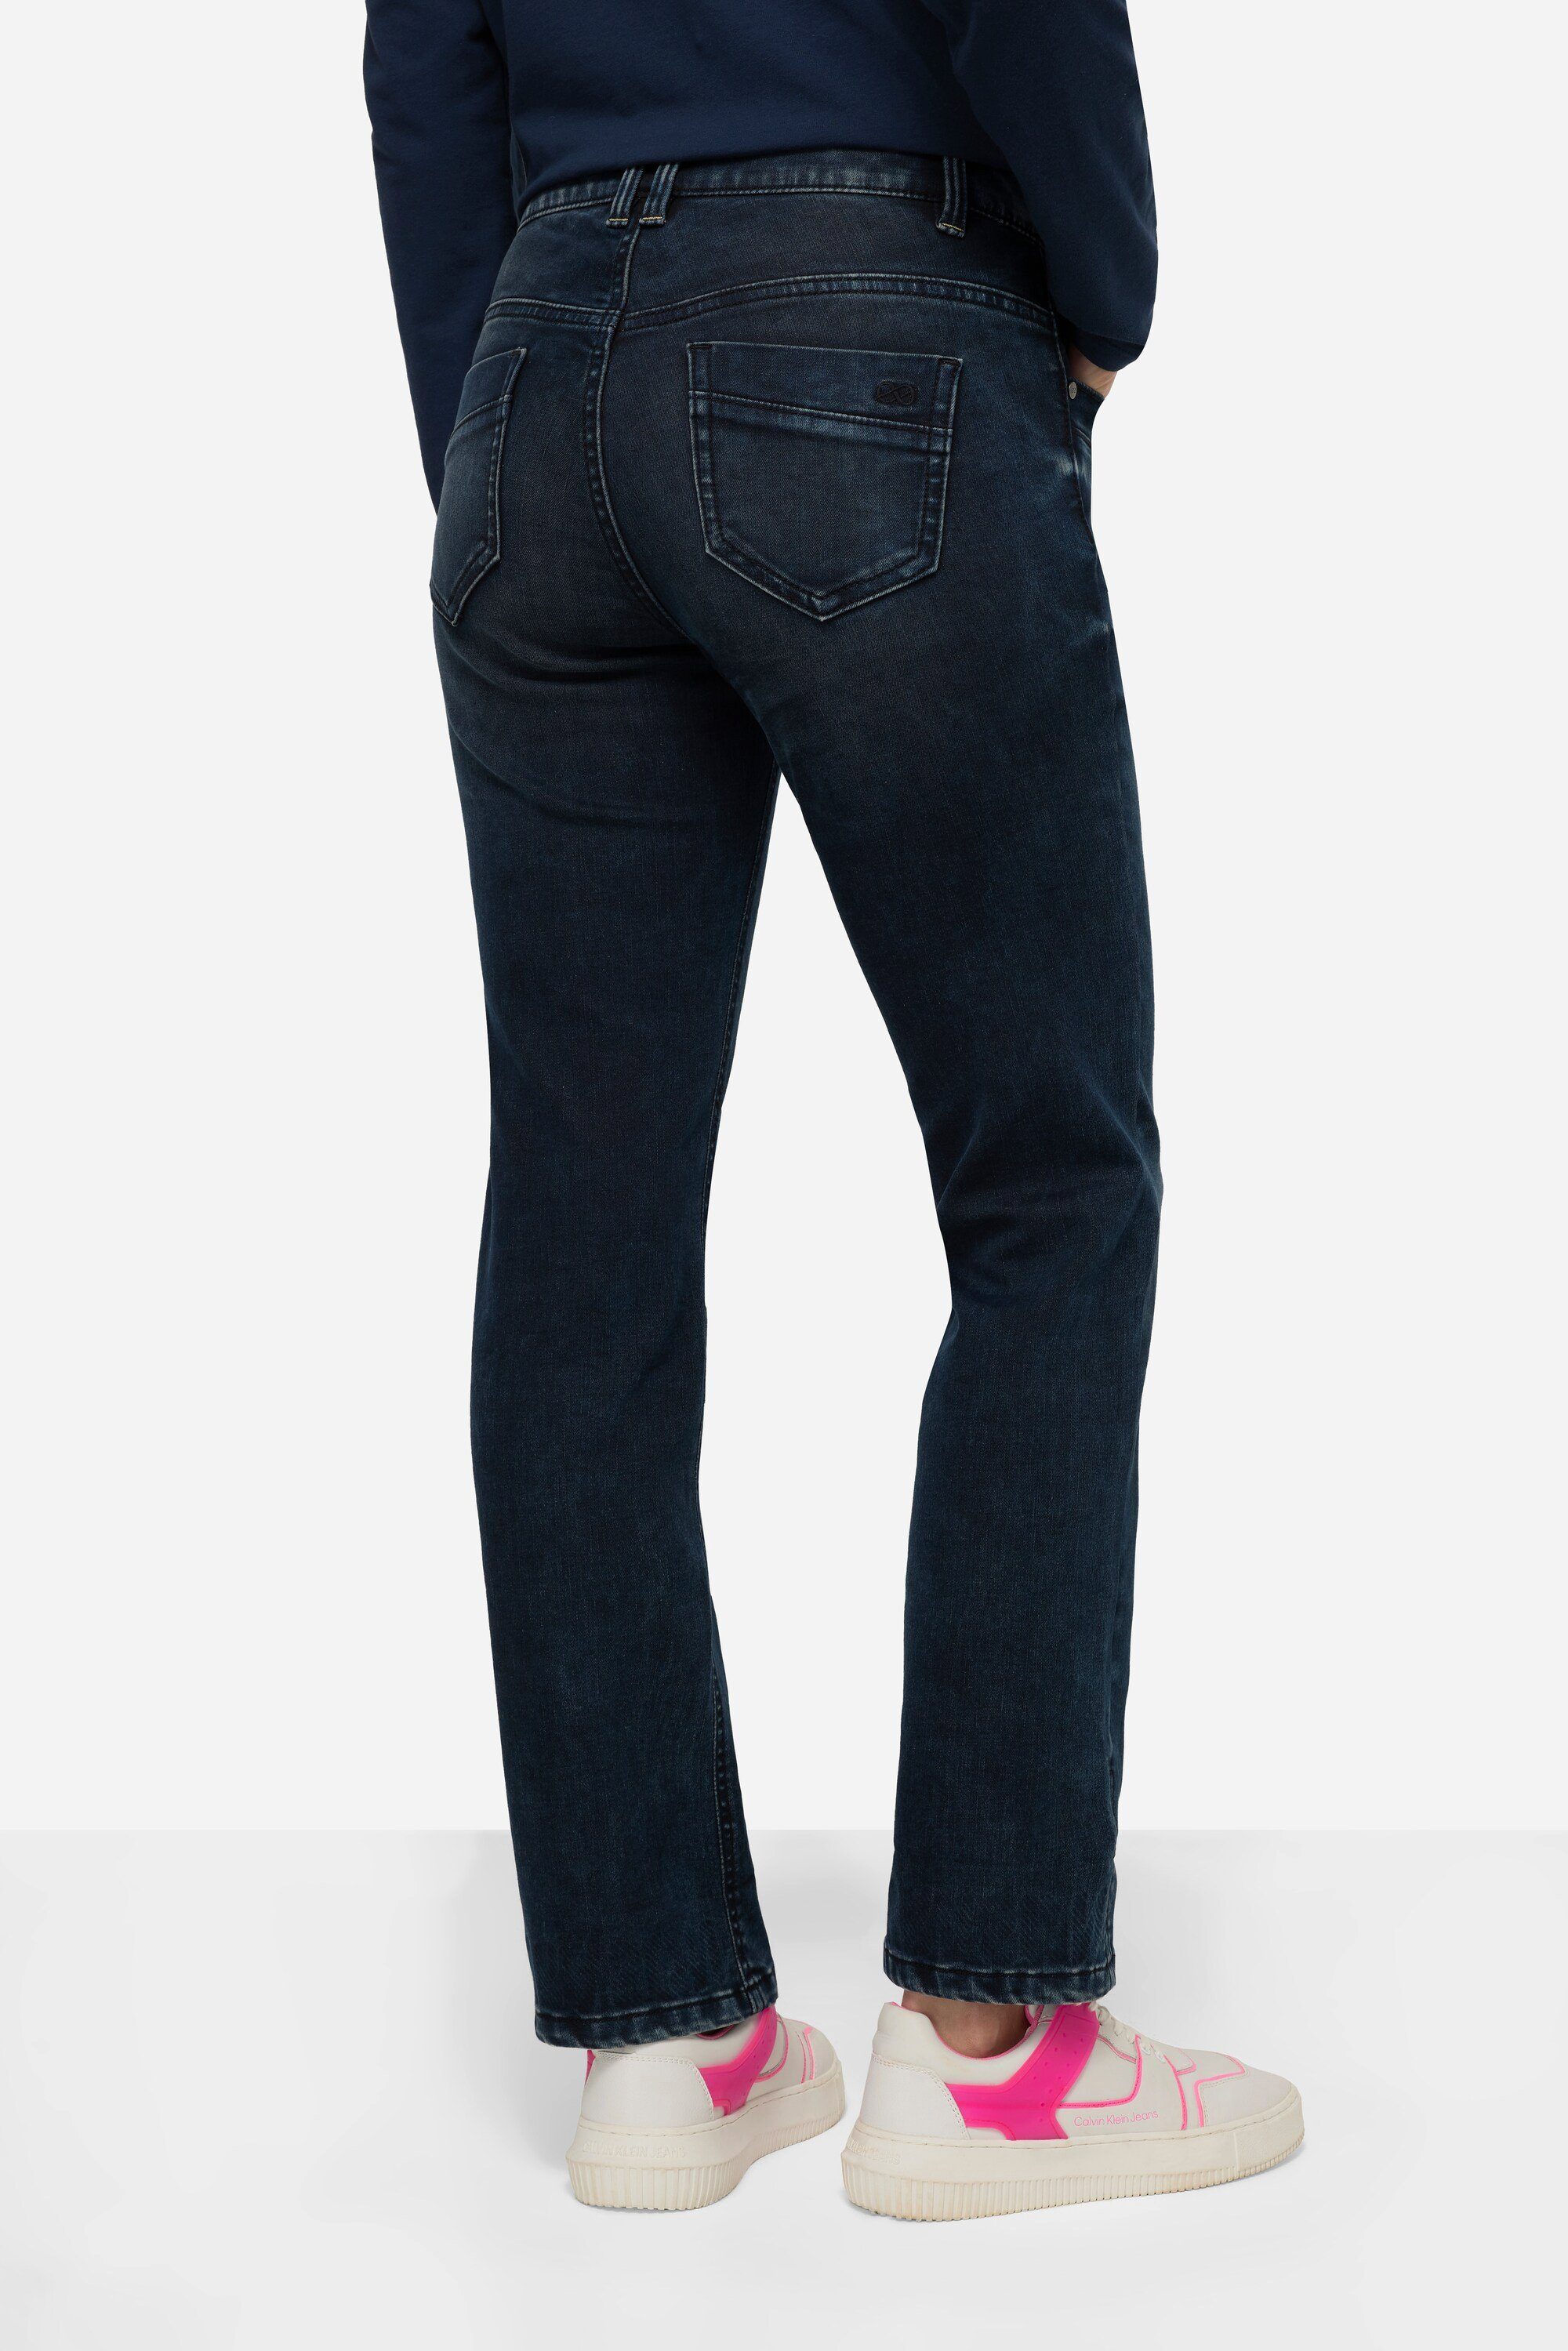 Laurasøn 5-Pocket-Jeans Jeans Straight 5-Pocket Fit